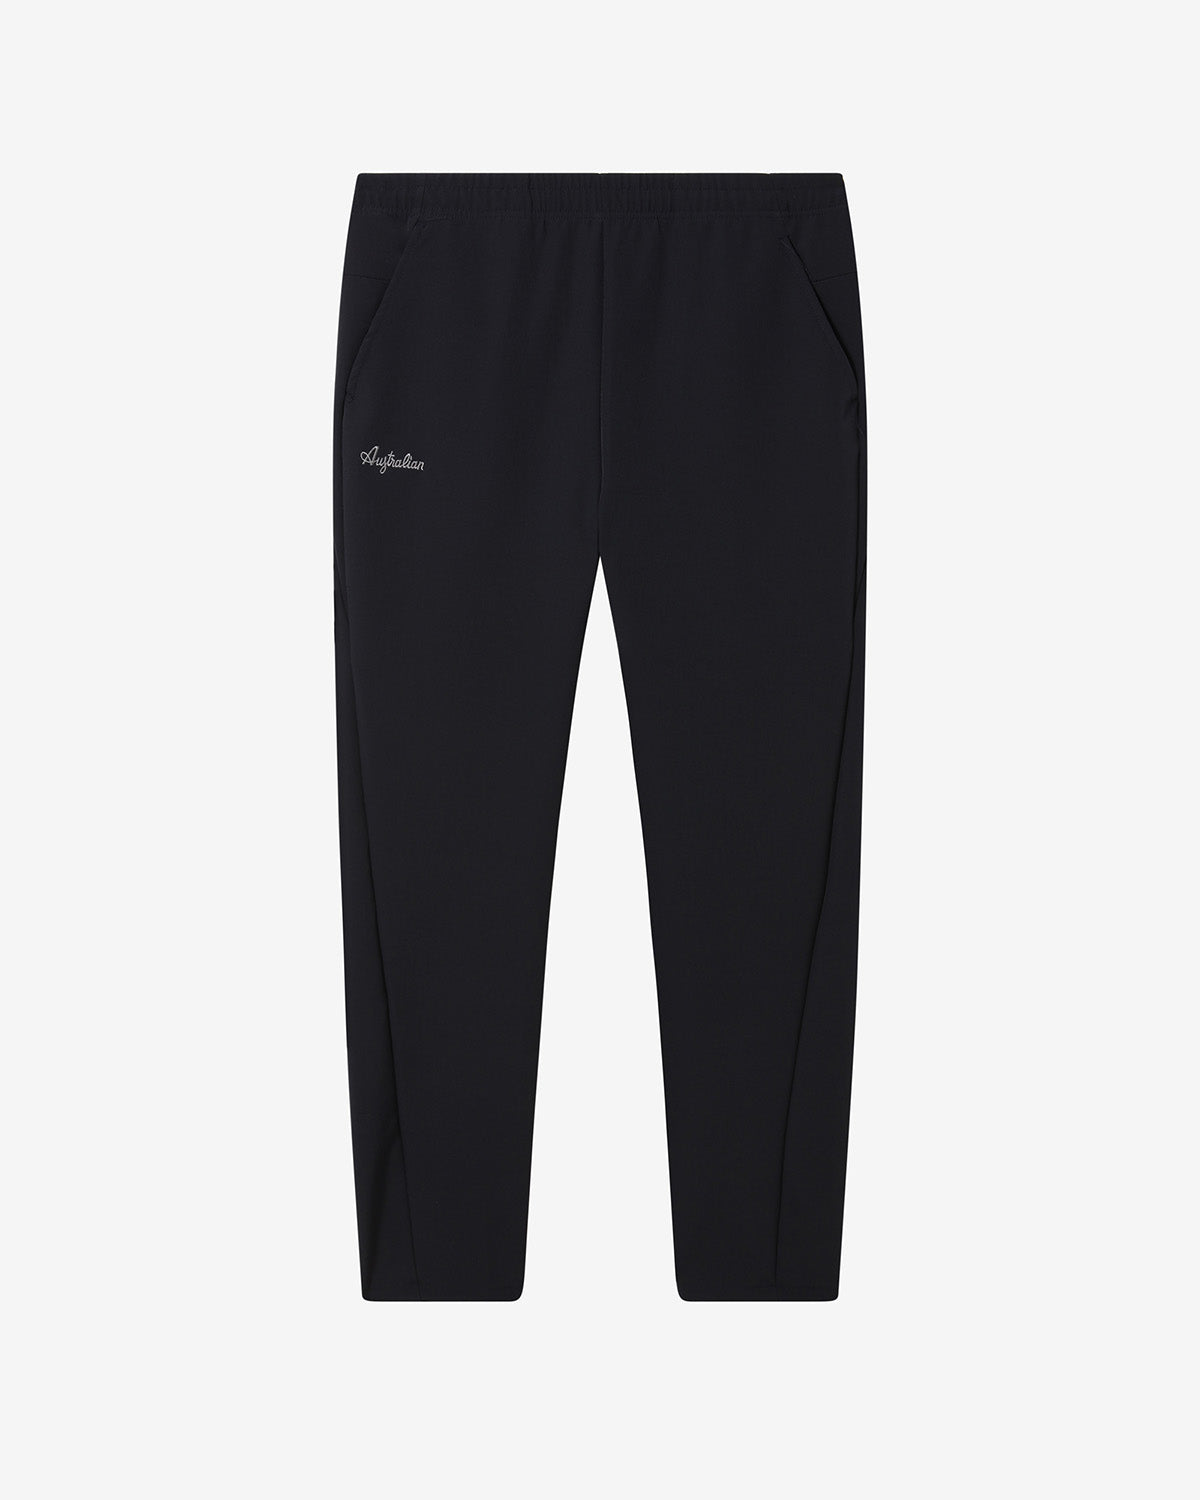 Flexit Pant: Australian Sportswear